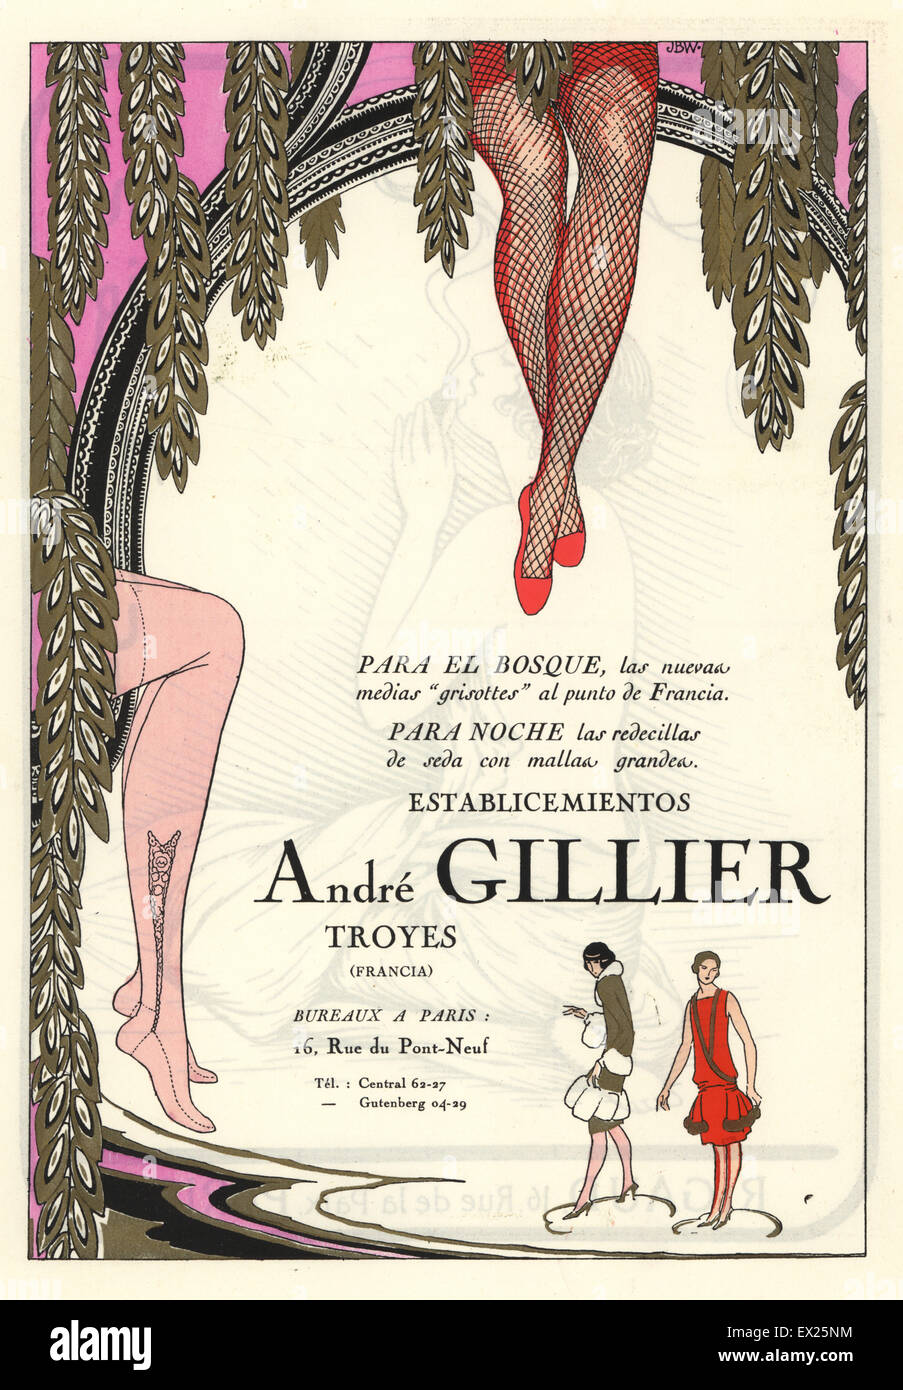 Werbung für Seidenstrümpfe Hersteller Andre Gillier, Paris. Lithographie mit Pochoir (Schablone) Färbung vom Luxus Mode Magazin Art Gicht Beaute, ABG, Paris, April 1926. Stockfoto